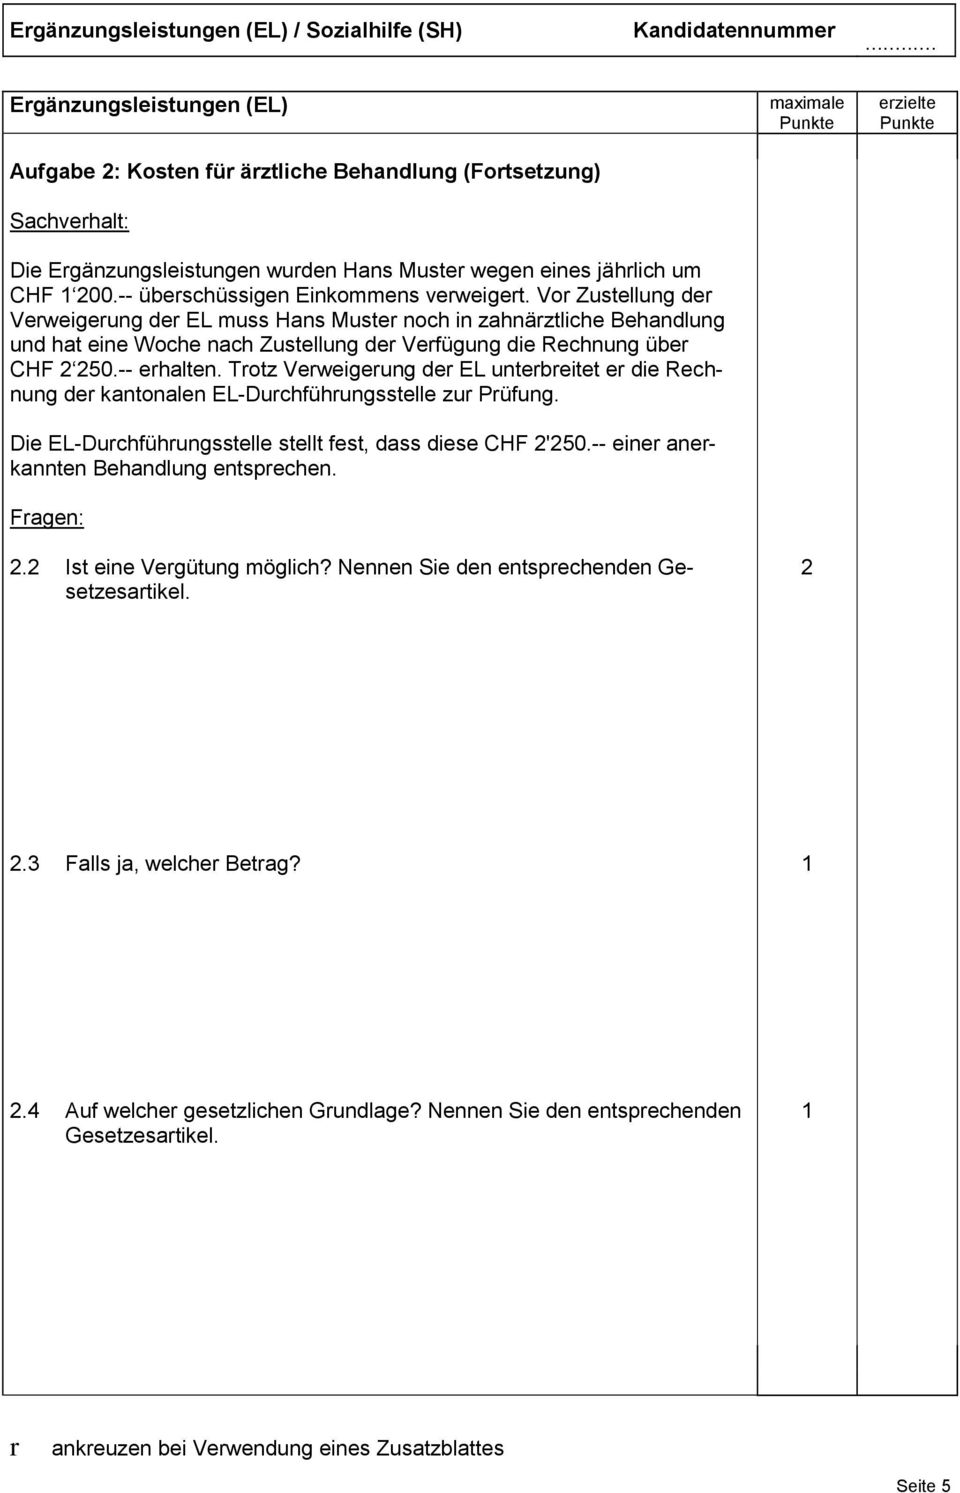 Trotz Verweigerung der EL unterbreitet er die Rechnung der kantonalen EL-Durchführungsstelle zur Prüfung. Die EL-Durchführungsstelle stellt fest, dass diese CHF '50.